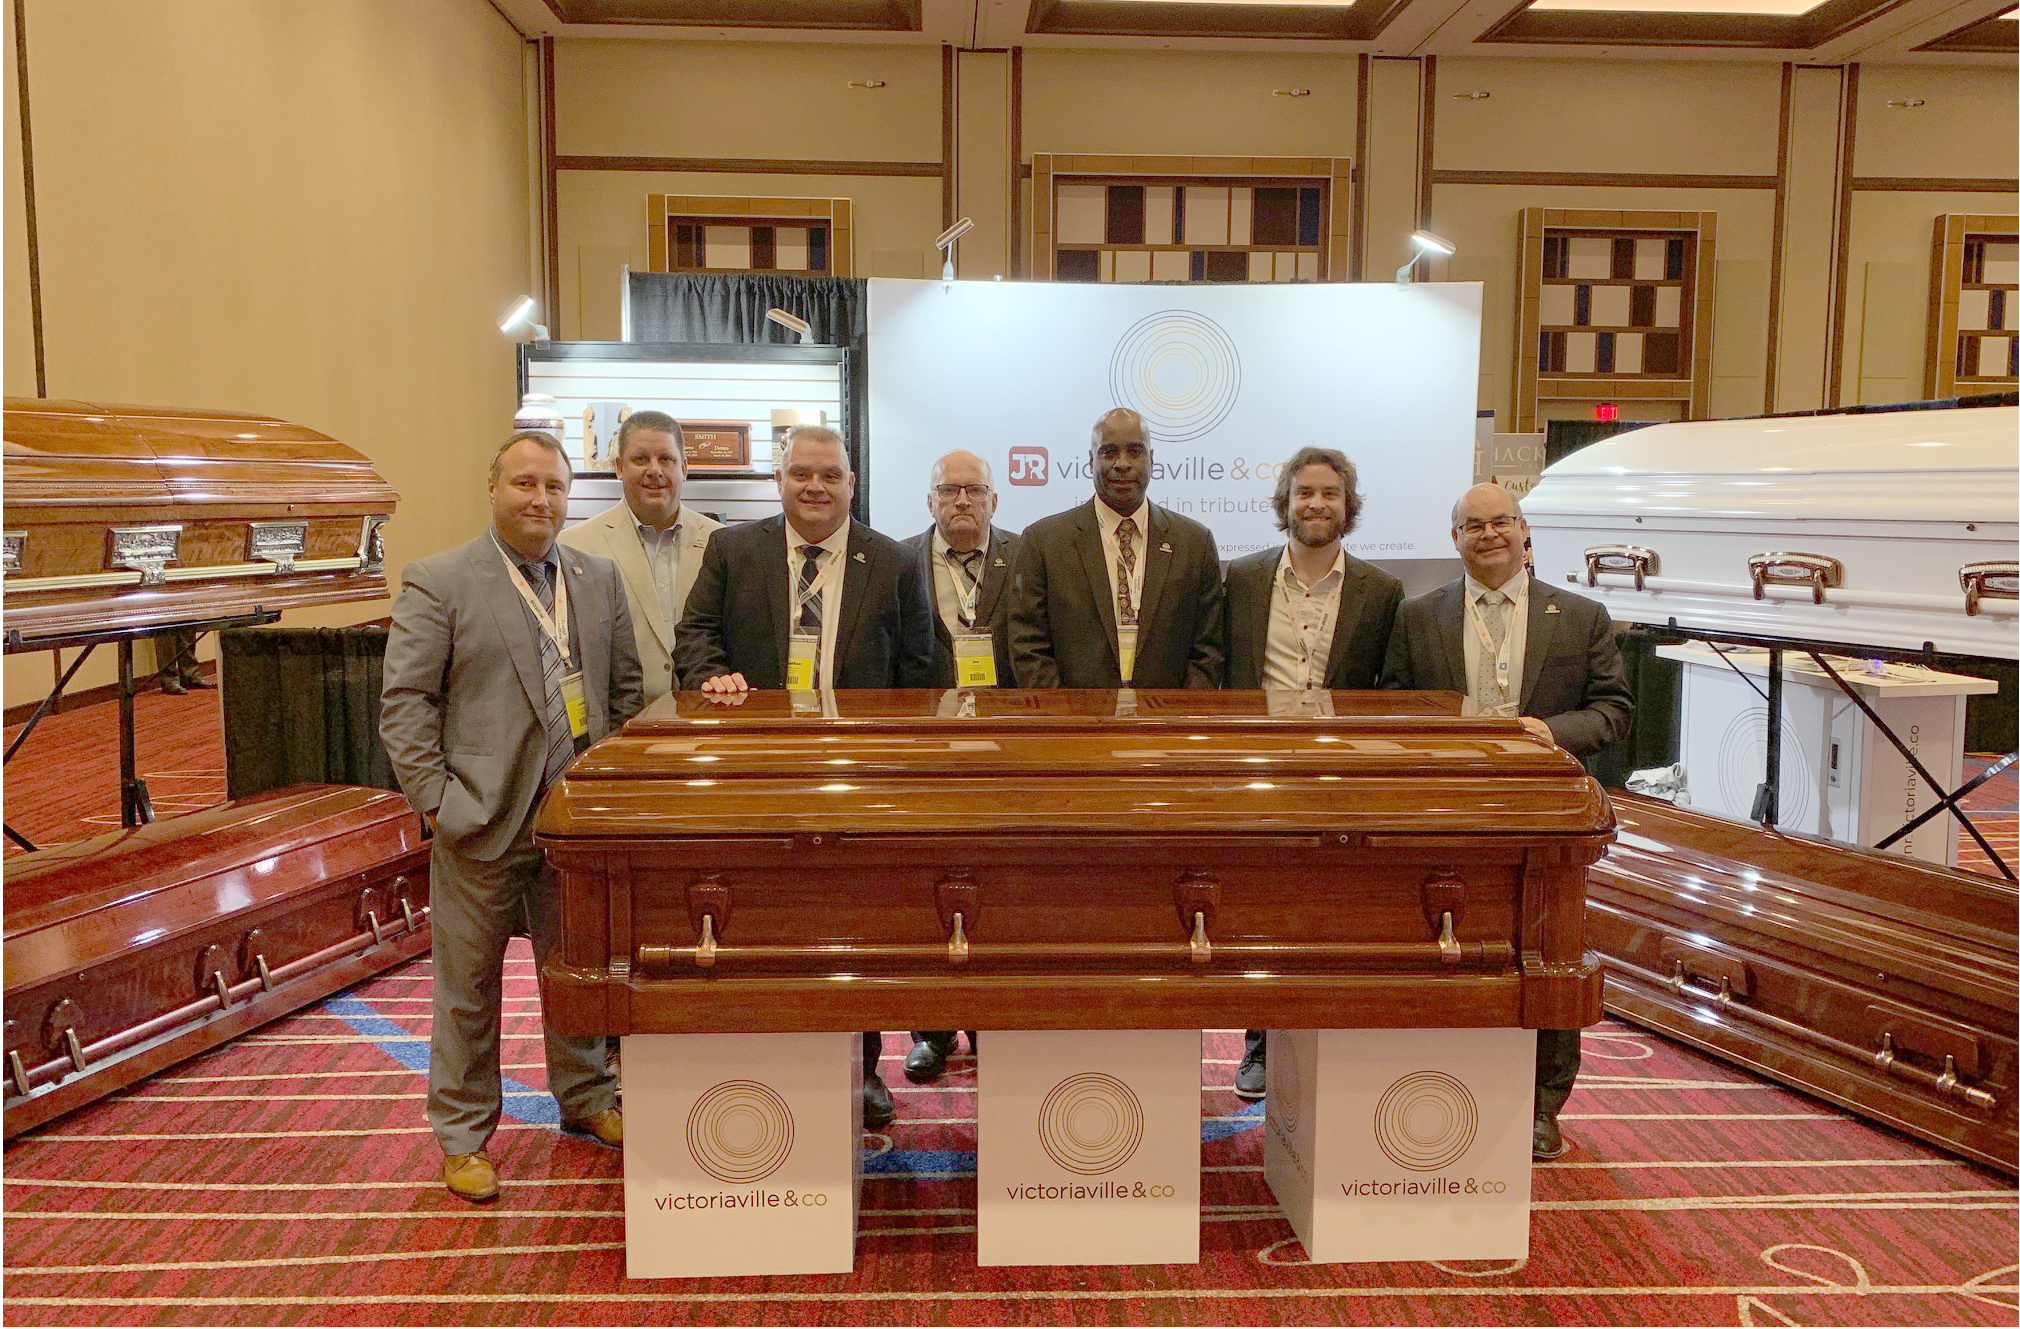 L’équipe de J&R Victoriaville participait au New-Jersey State Funeral Directors’ Association Convention les 17-18-19 septembre 2019 à Atlantic City